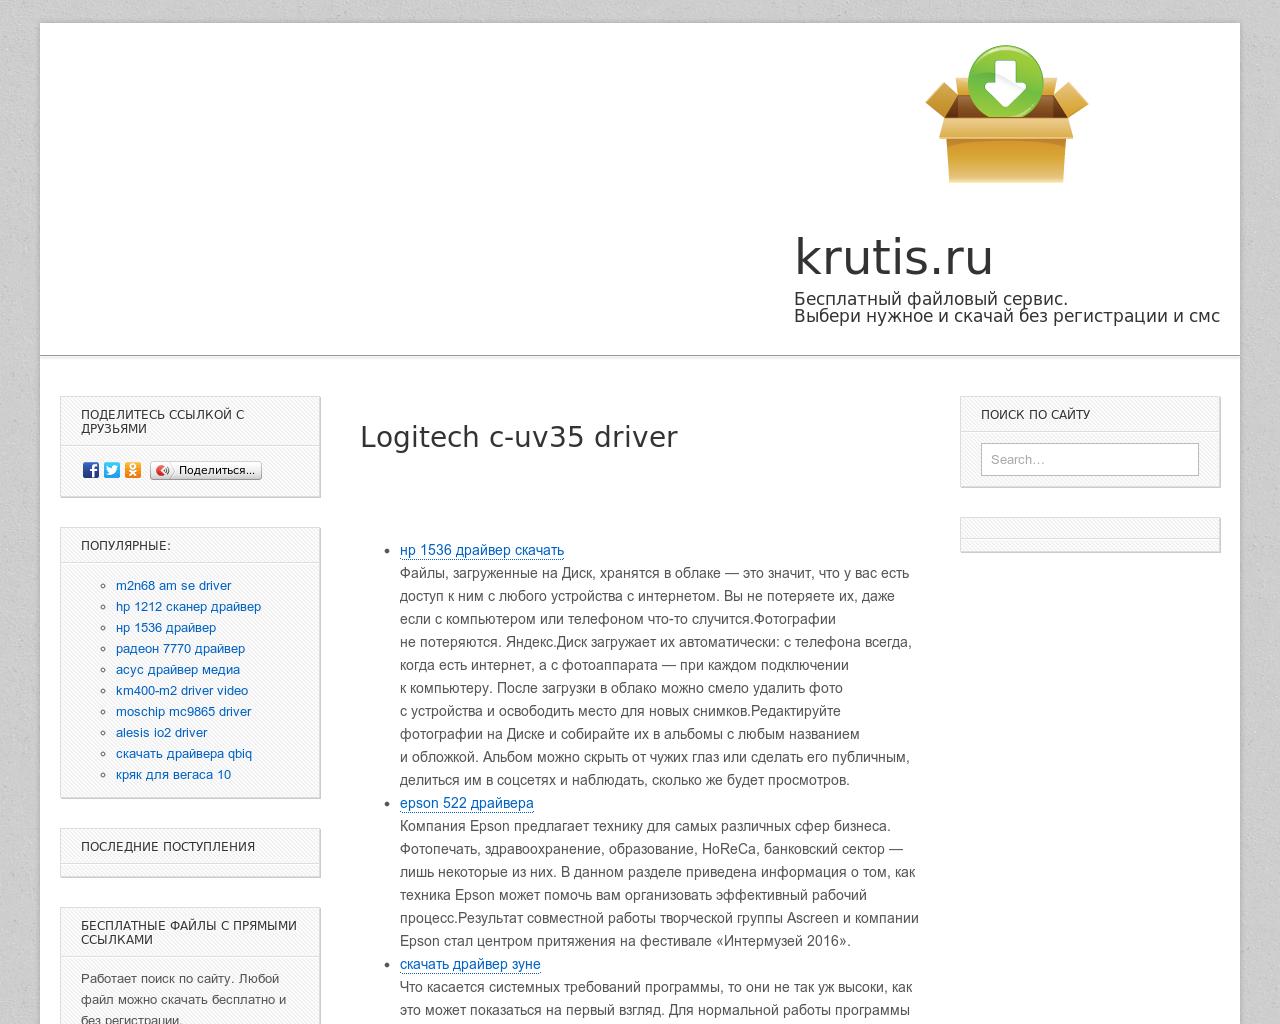 Изображение сайта krutis.ru в разрешении 1280x1024